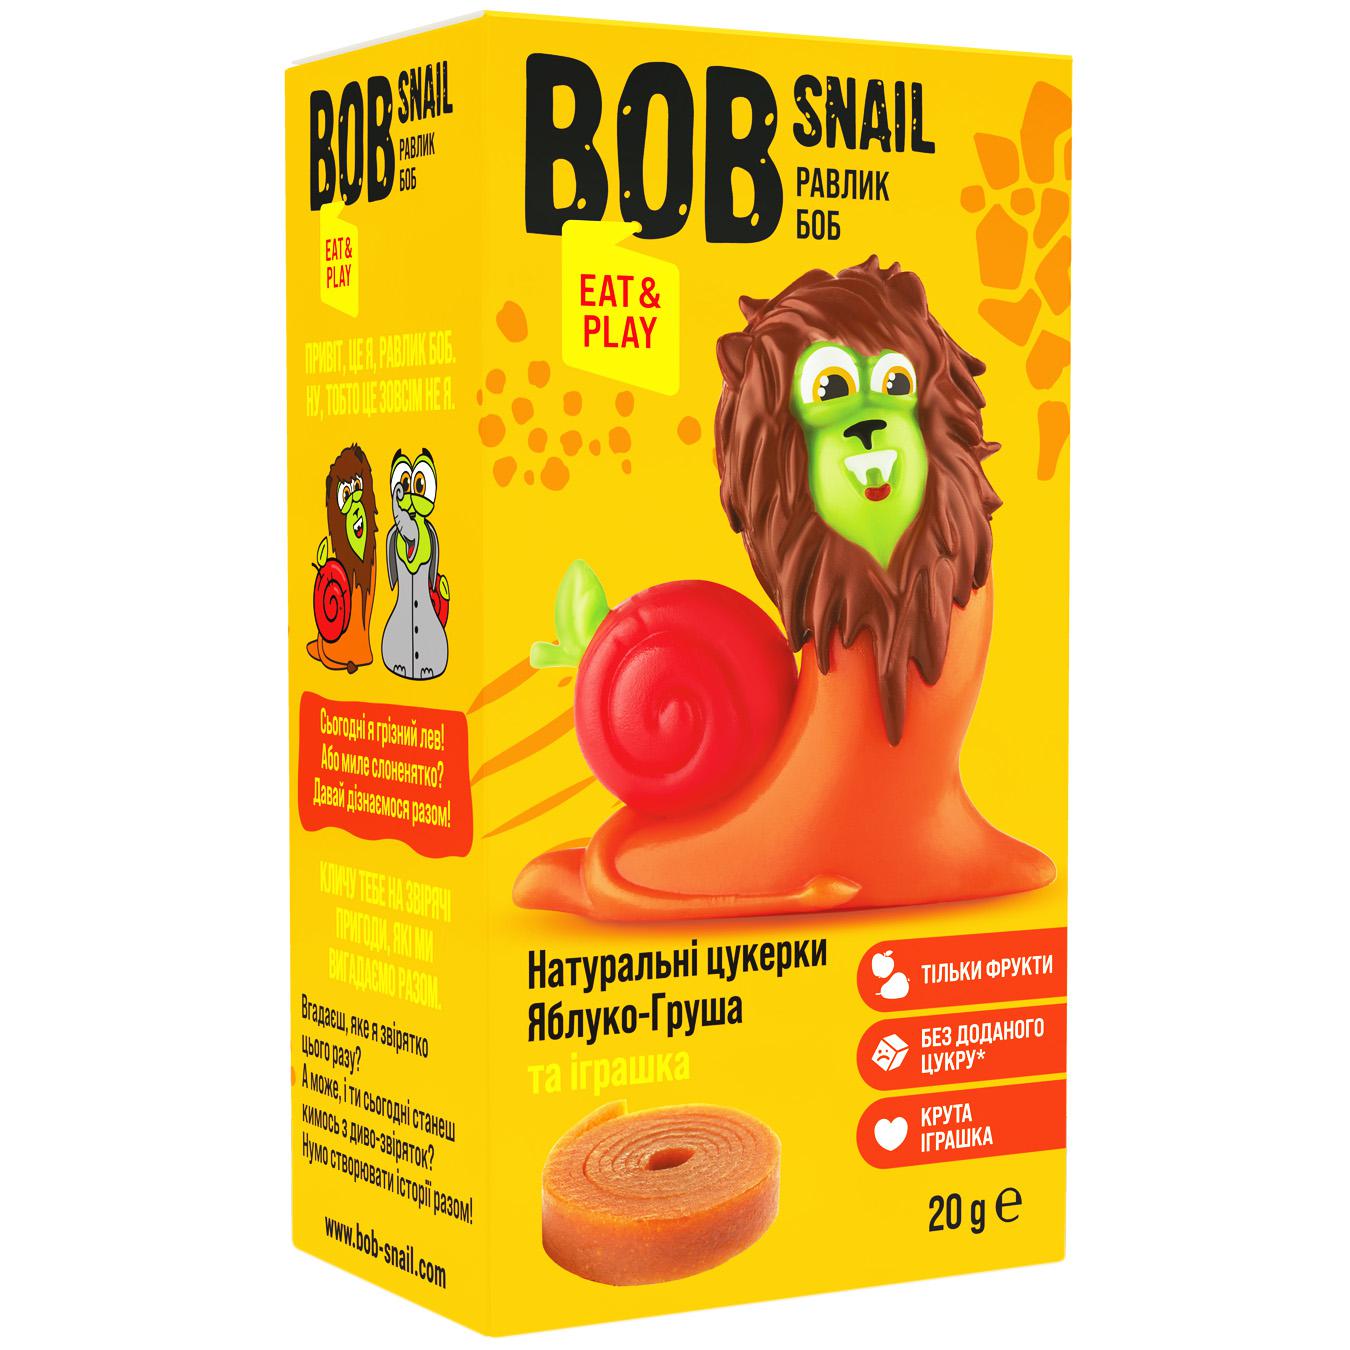 Набор Конфеты Bob Snail яблоко-груша 20г и игрушка